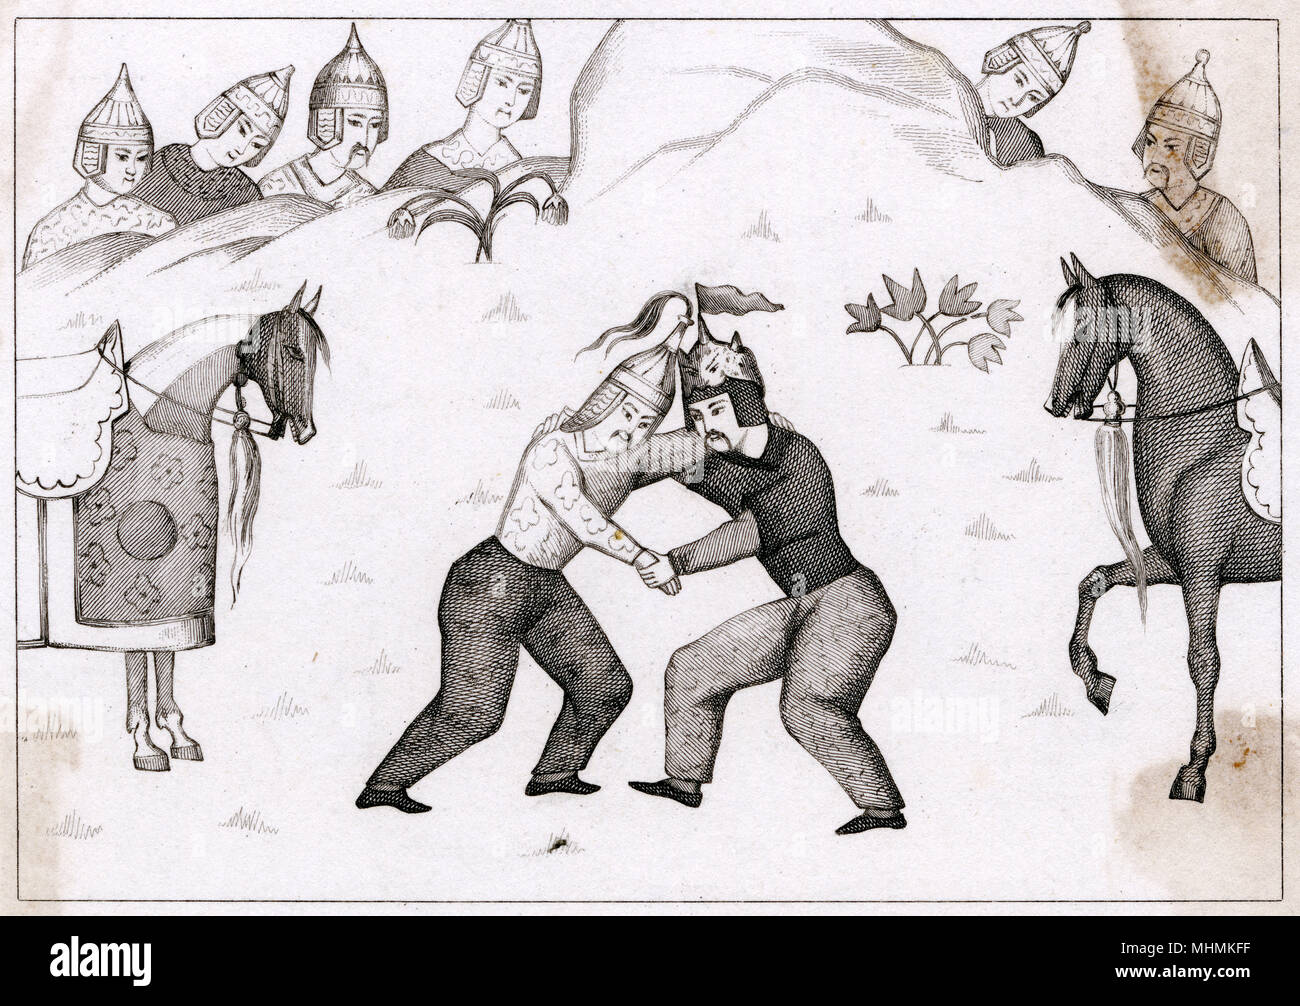 Il persiano lottatori lottano gli uni contro gli altri, guardato da molti soldati. Data: antica Foto Stock